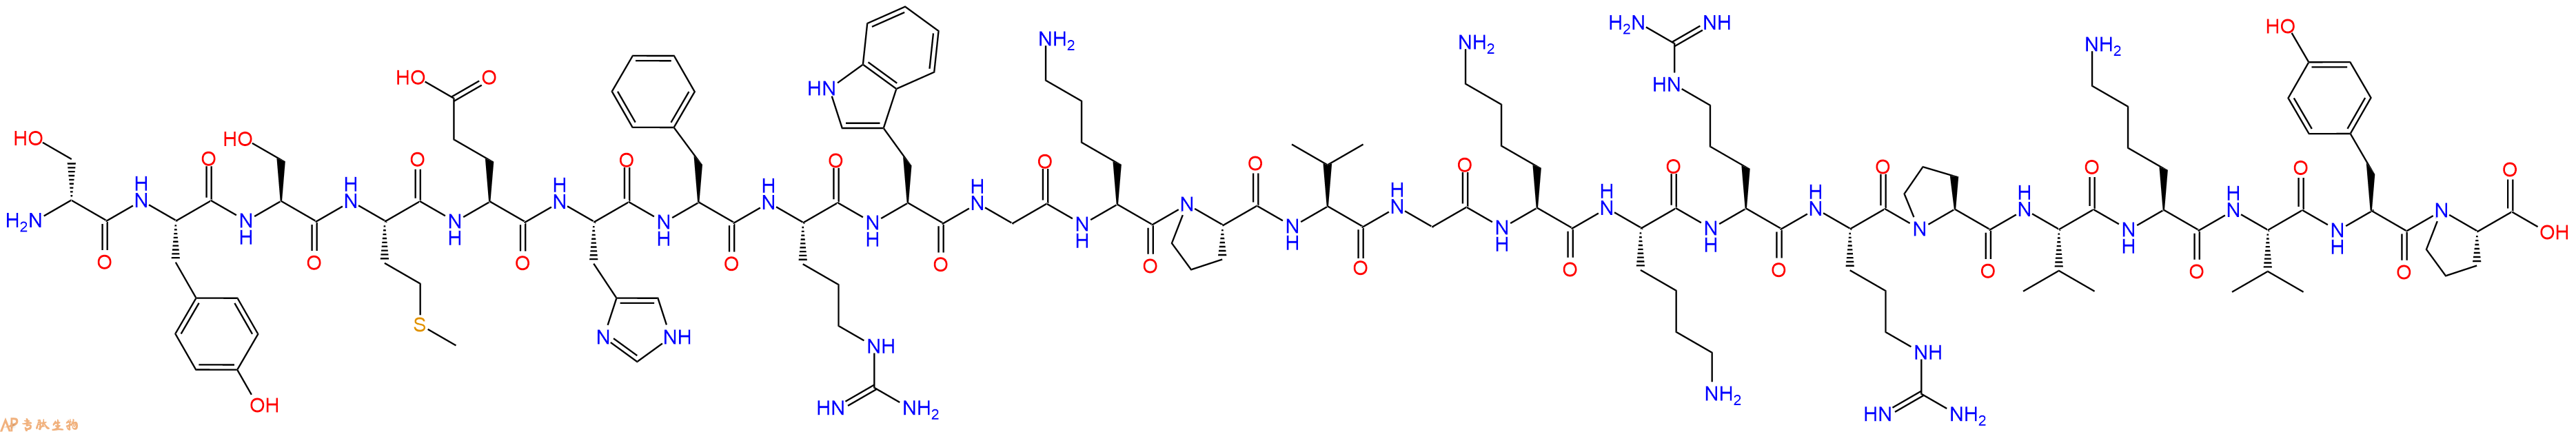 专肽生物产品促肾上腺皮质激素(D-Ser1)-ACTH (1-24) (human, bovine, rat)18067-65-7/26469-81-8